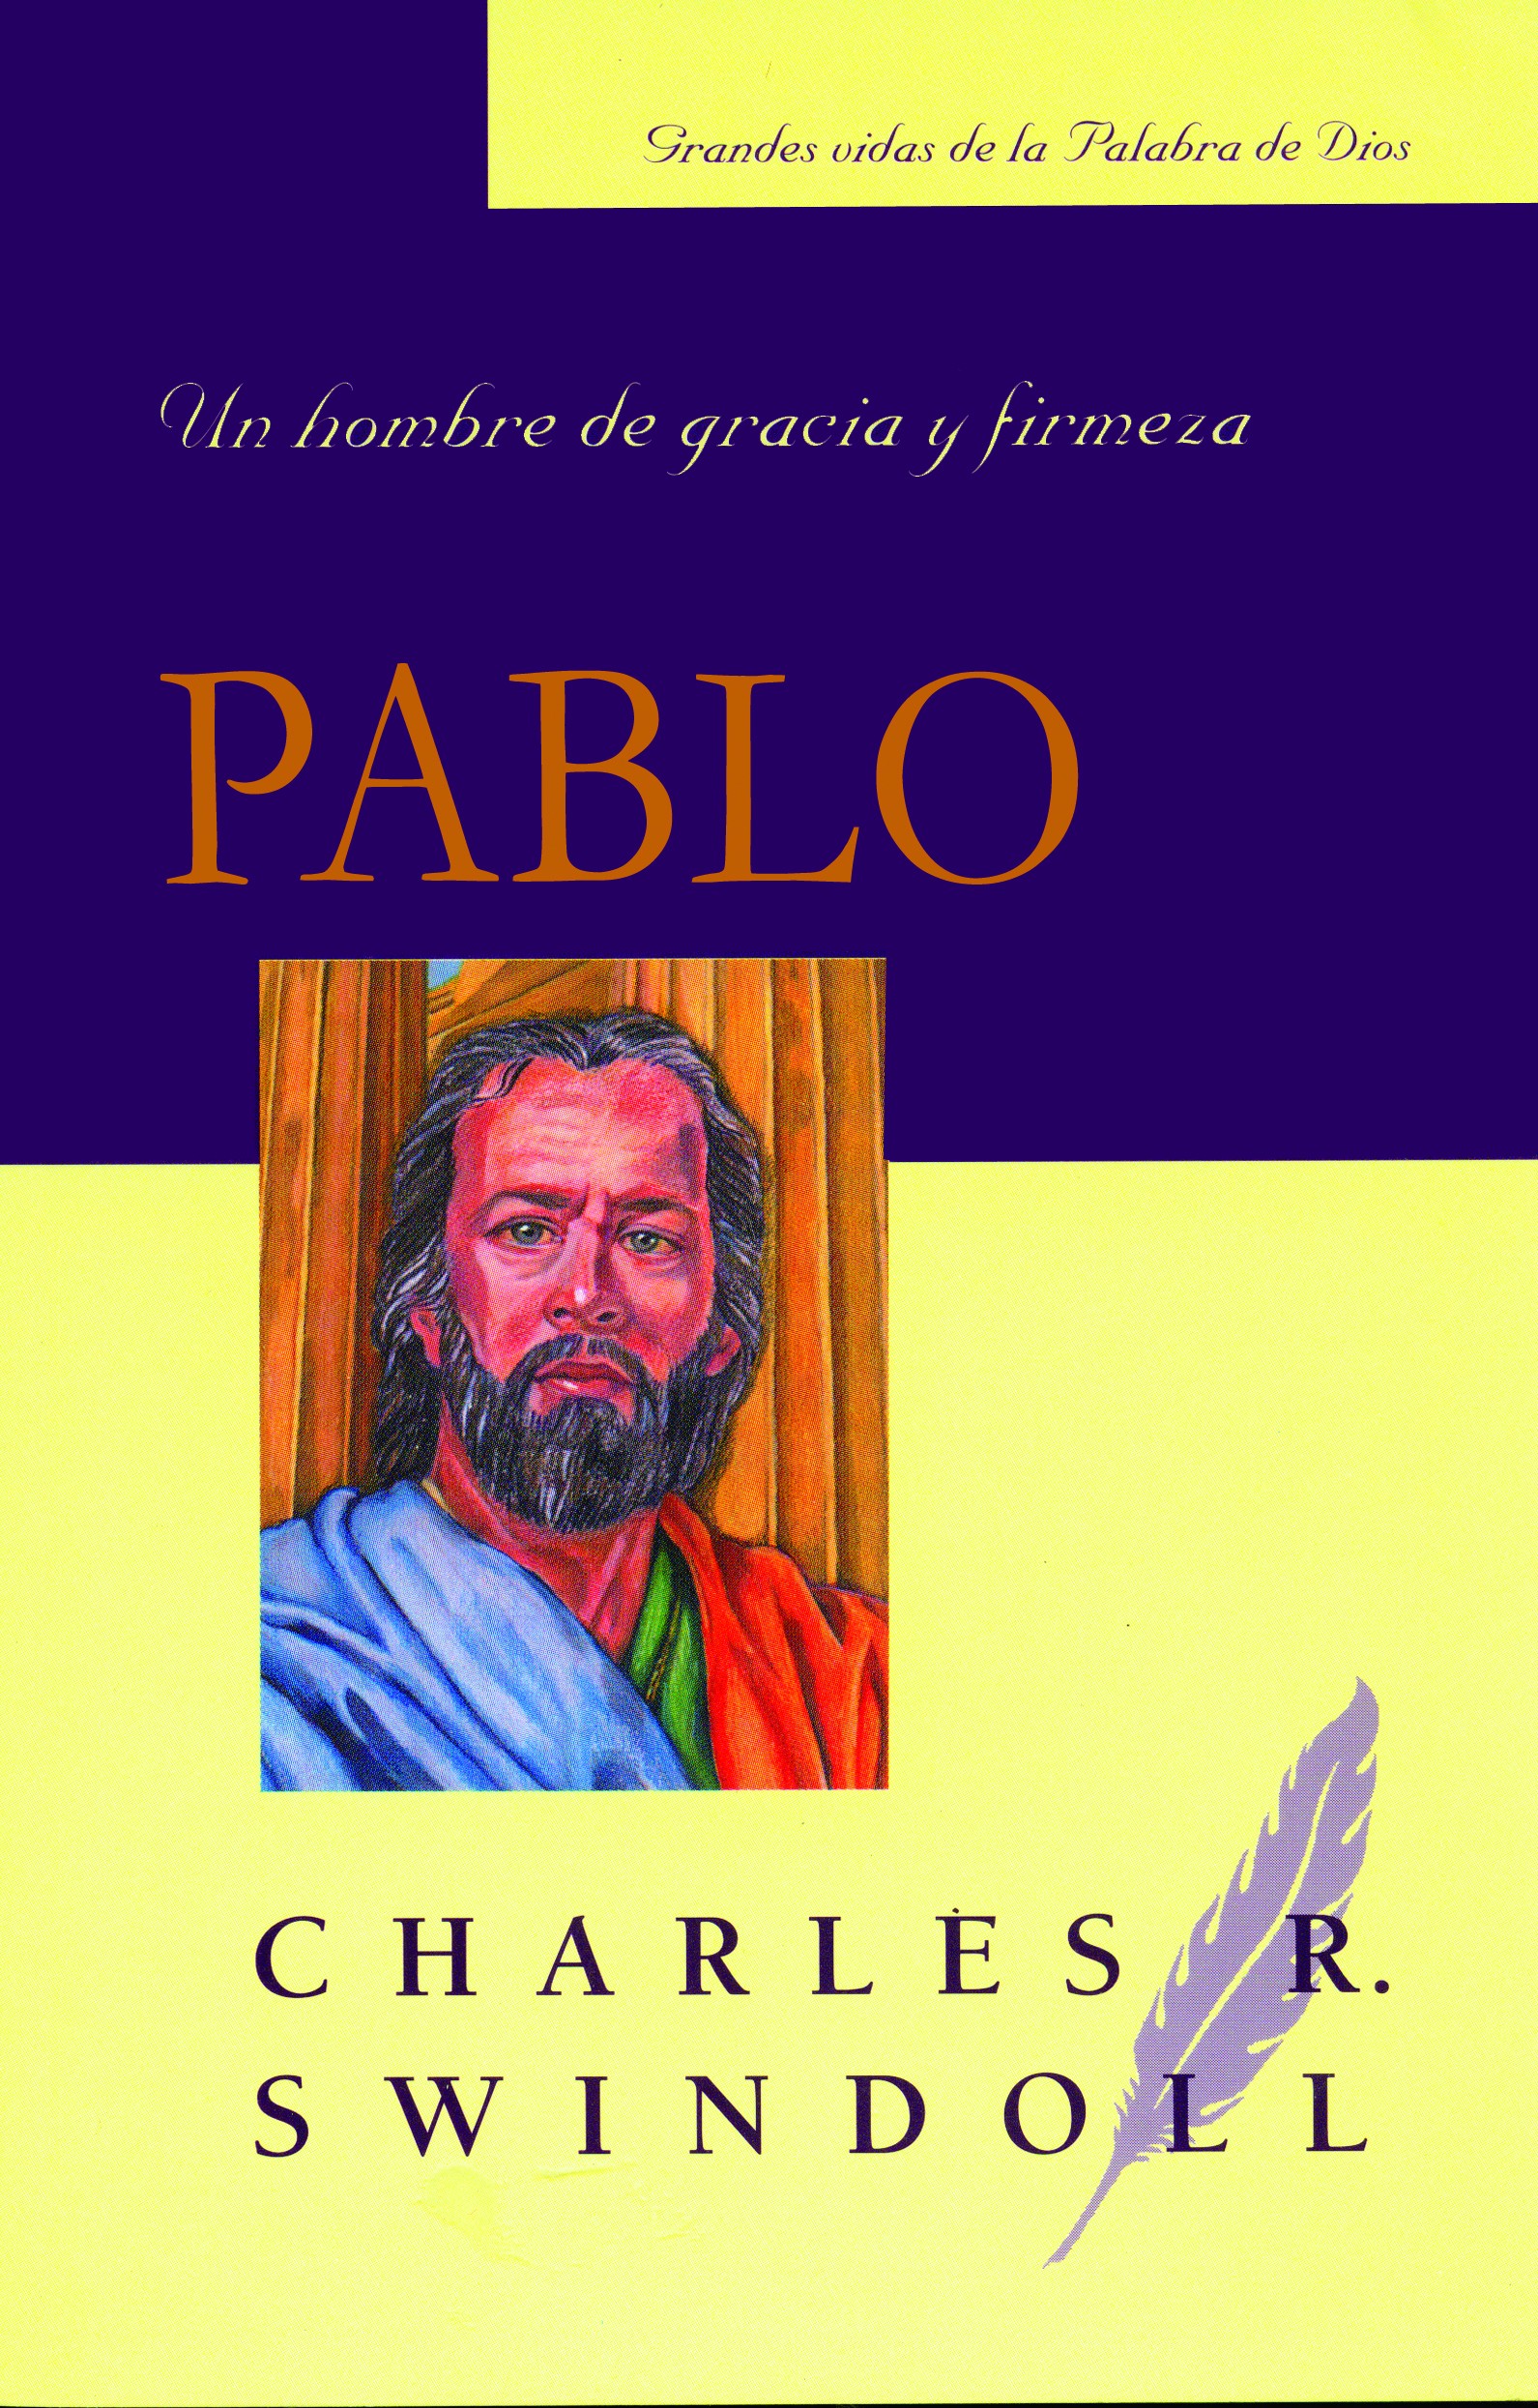 Pablo, un hombre de gracia y firmeza